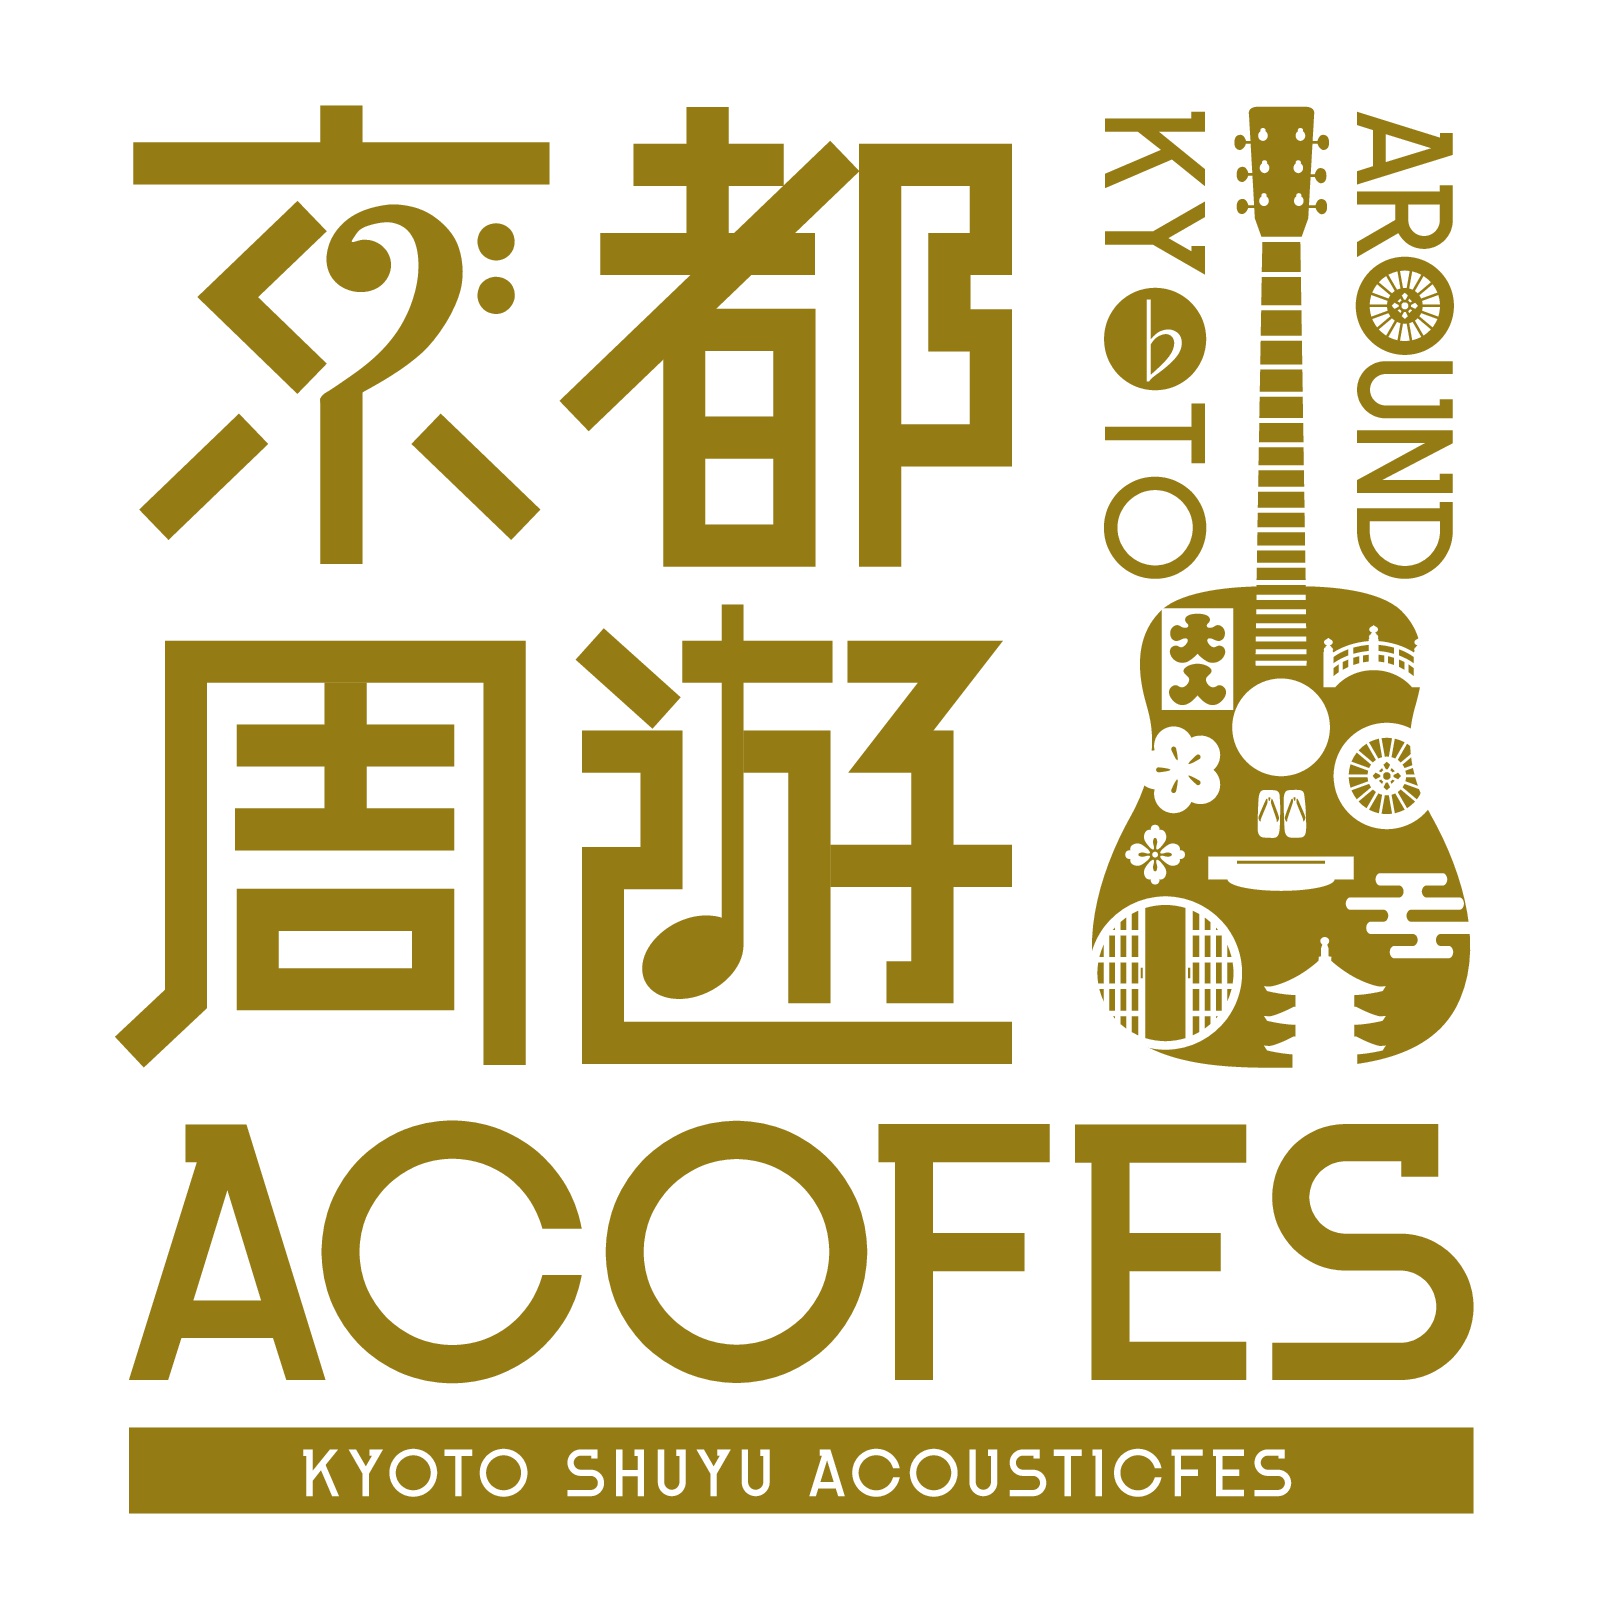 京都周遊アコースティックフェスティバル・プレイベント